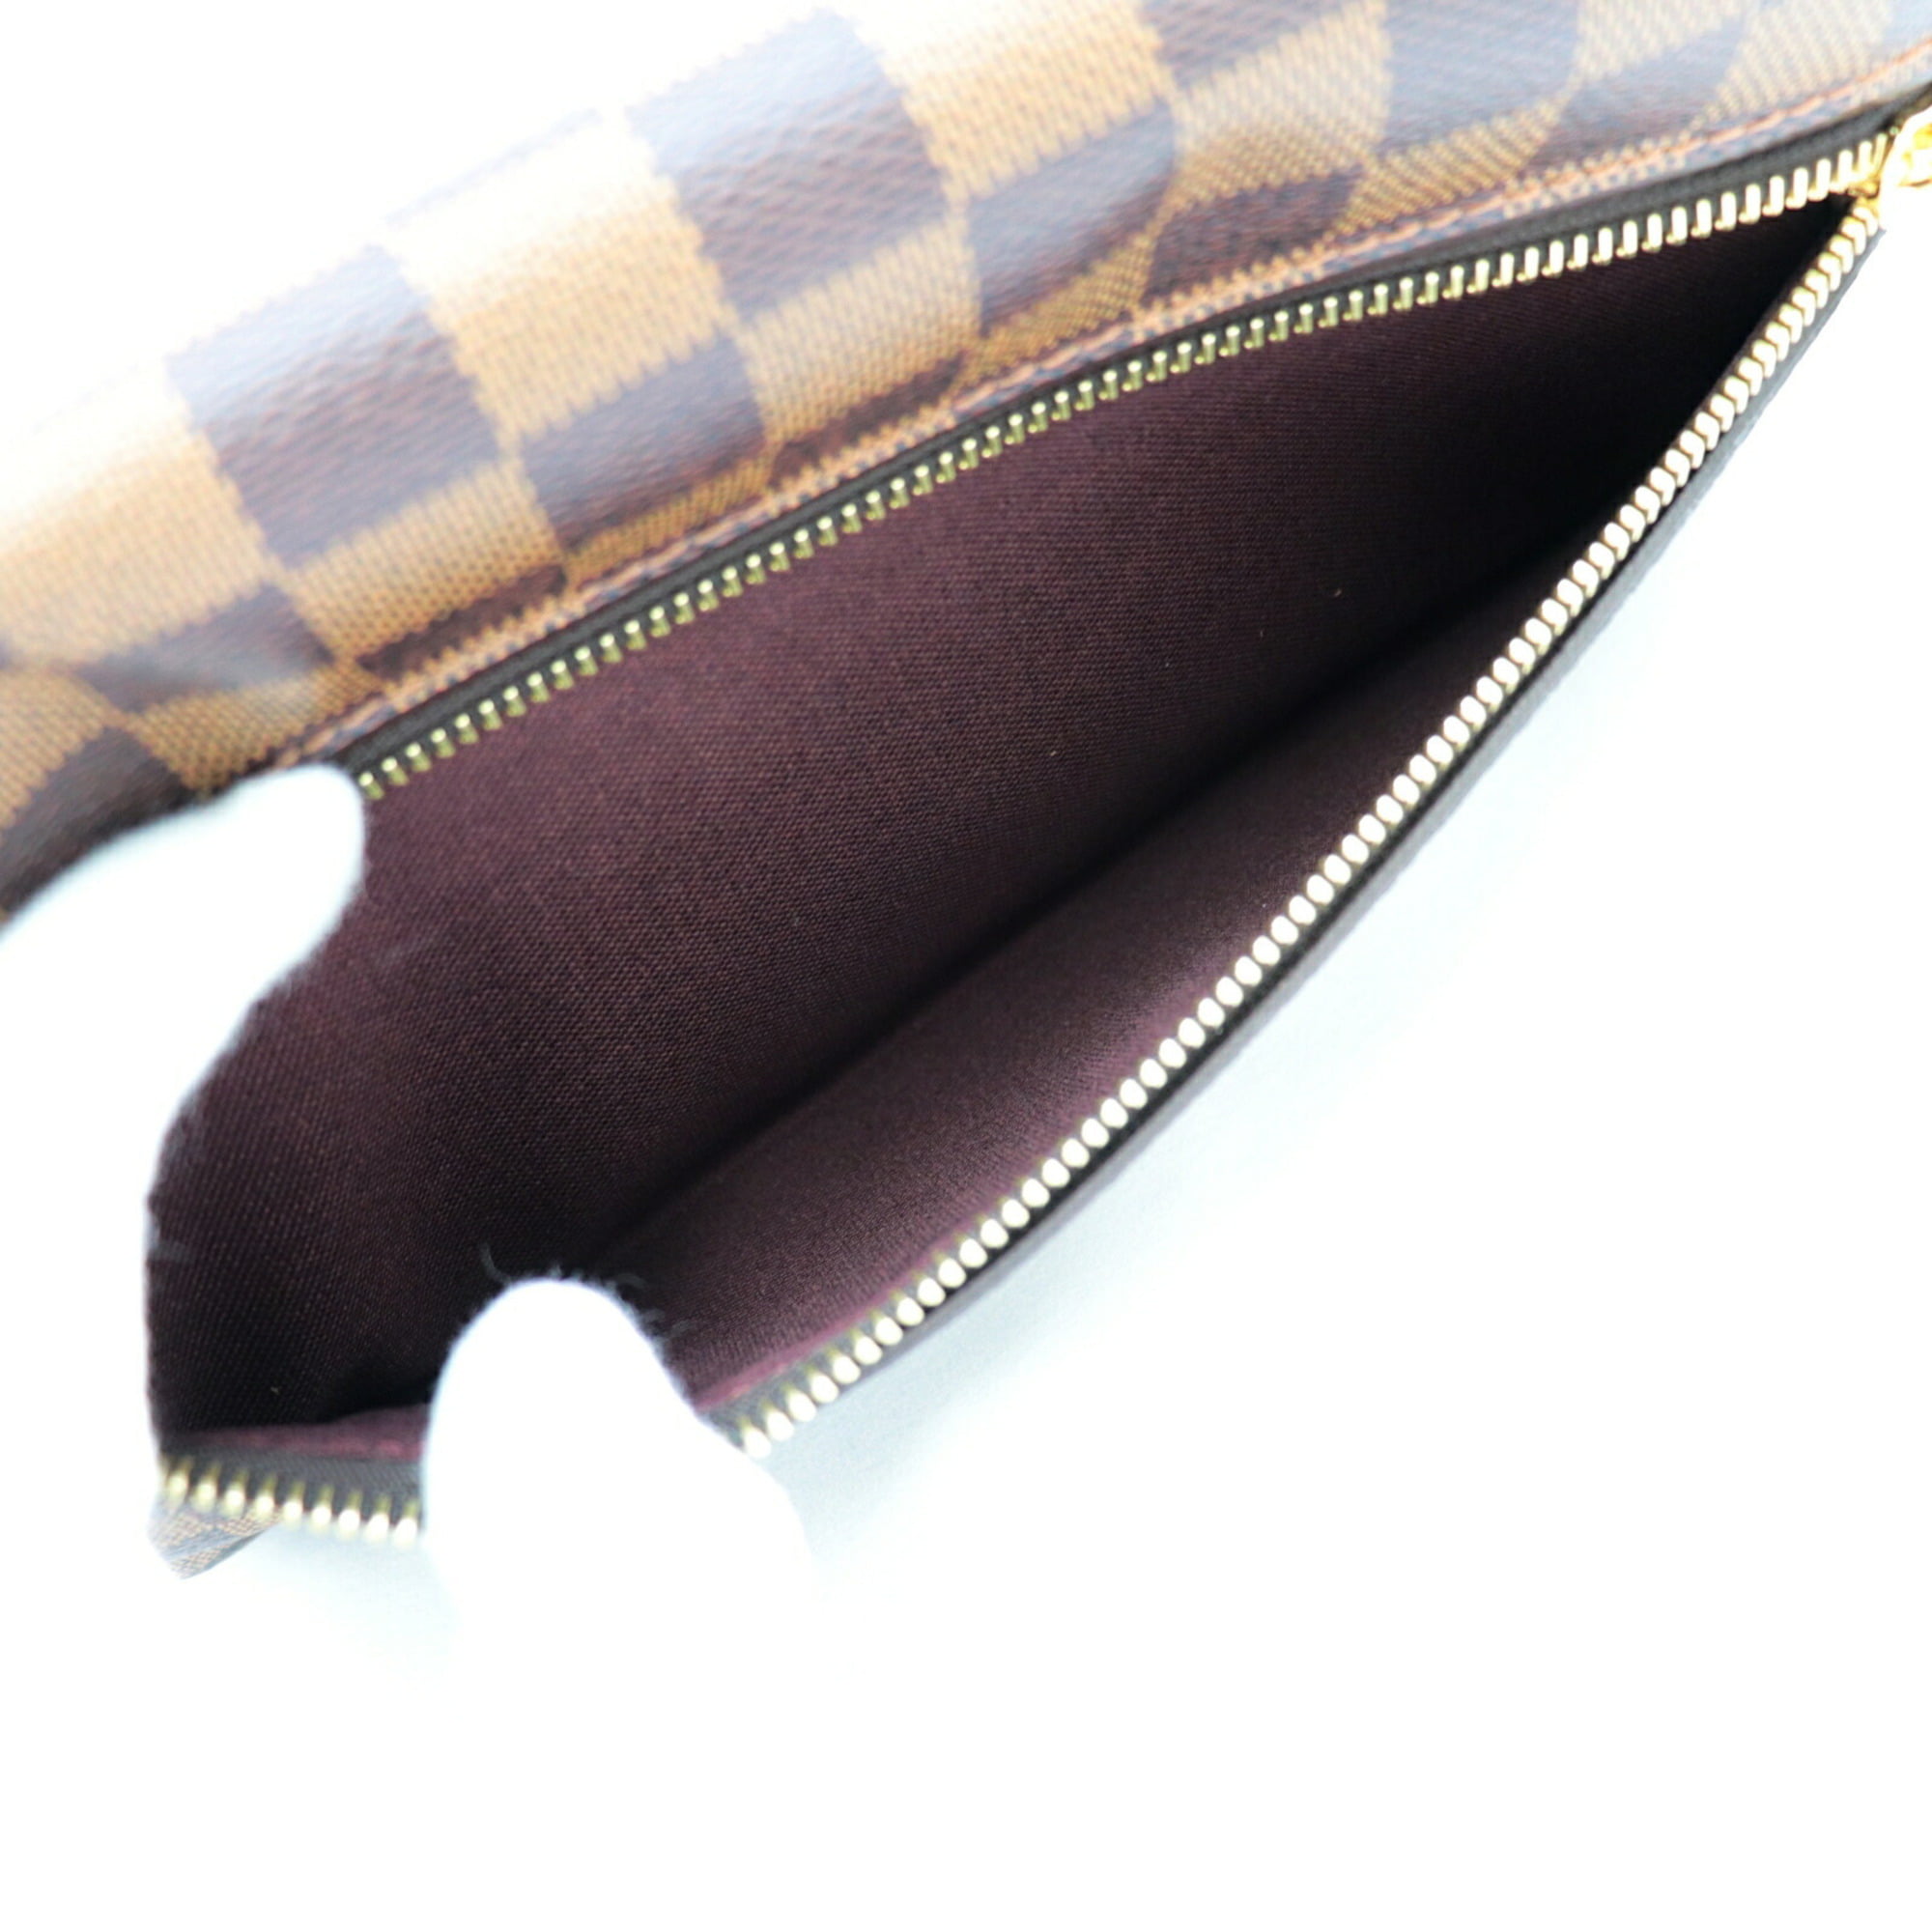 Authenticated used Louis Vuitton Hoxton PM Damier Shoulder Bag Women's Brown Crossbody N41257, Adult Unisex, Size: (HxWxD): 16cm x 25cm / 6.29'' x